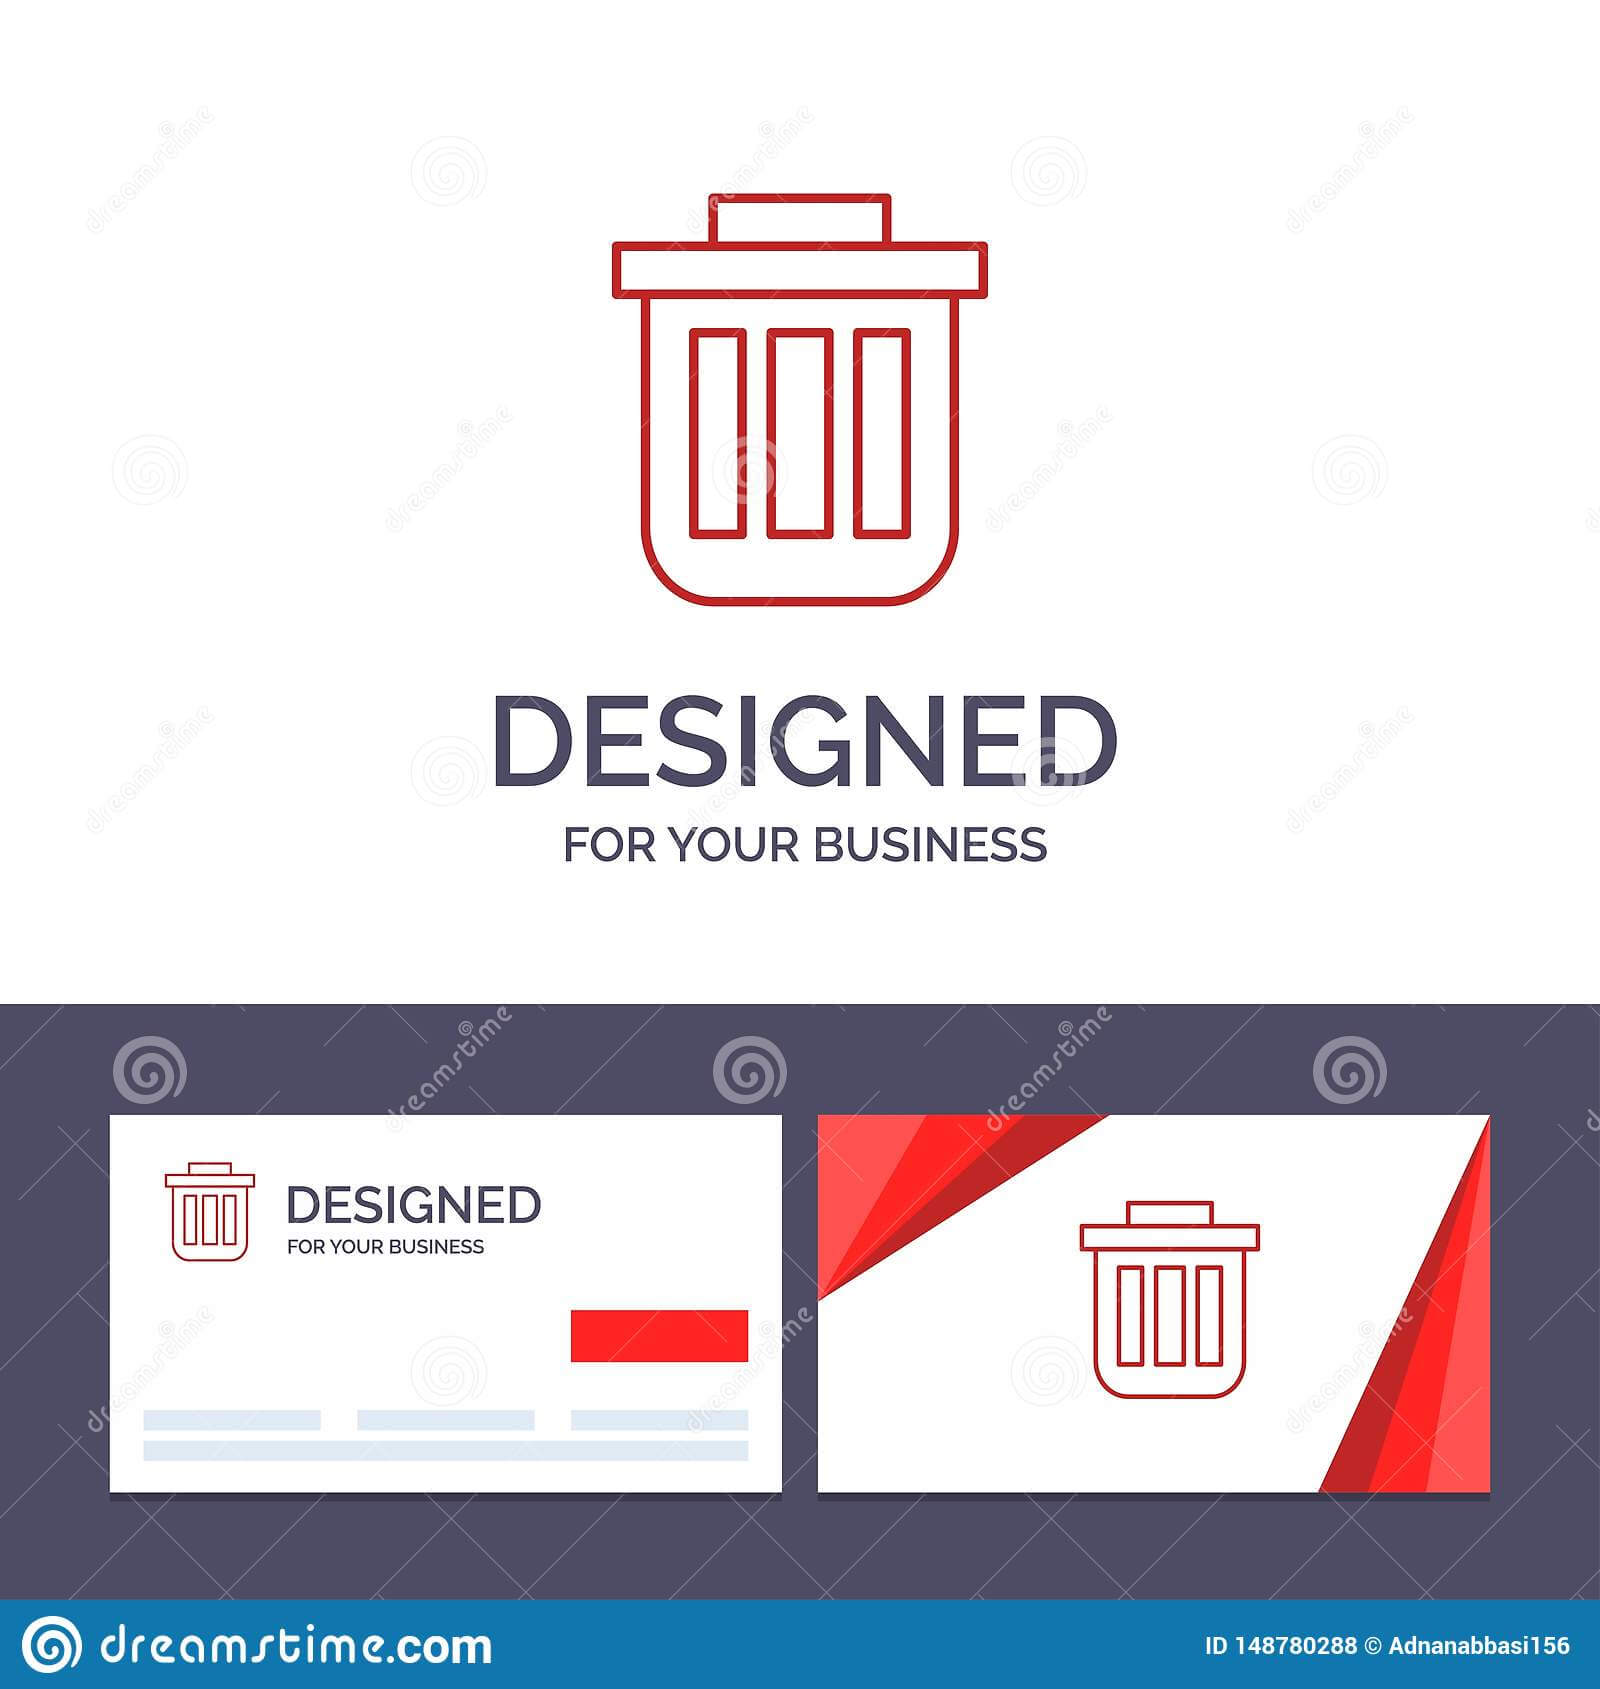 Creative Business Card And Logo Template Trash, Basket, Bin With Bin Card Template